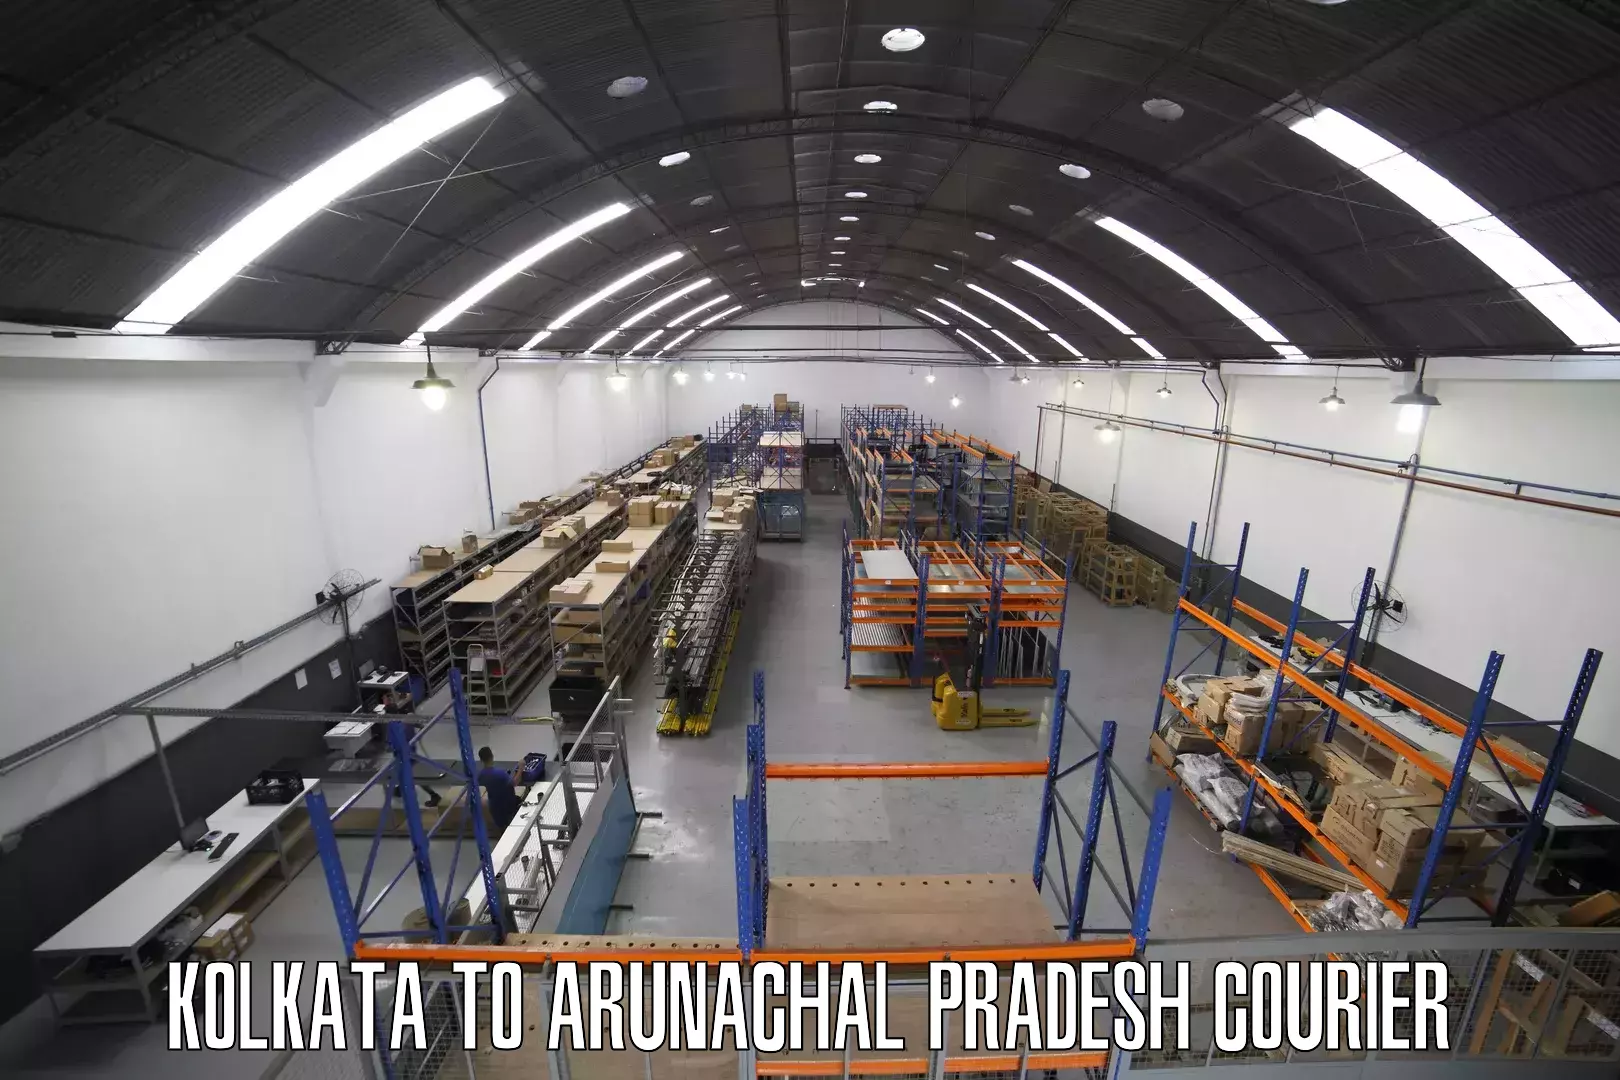 Next-day freight services Kolkata to Arunachal Pradesh